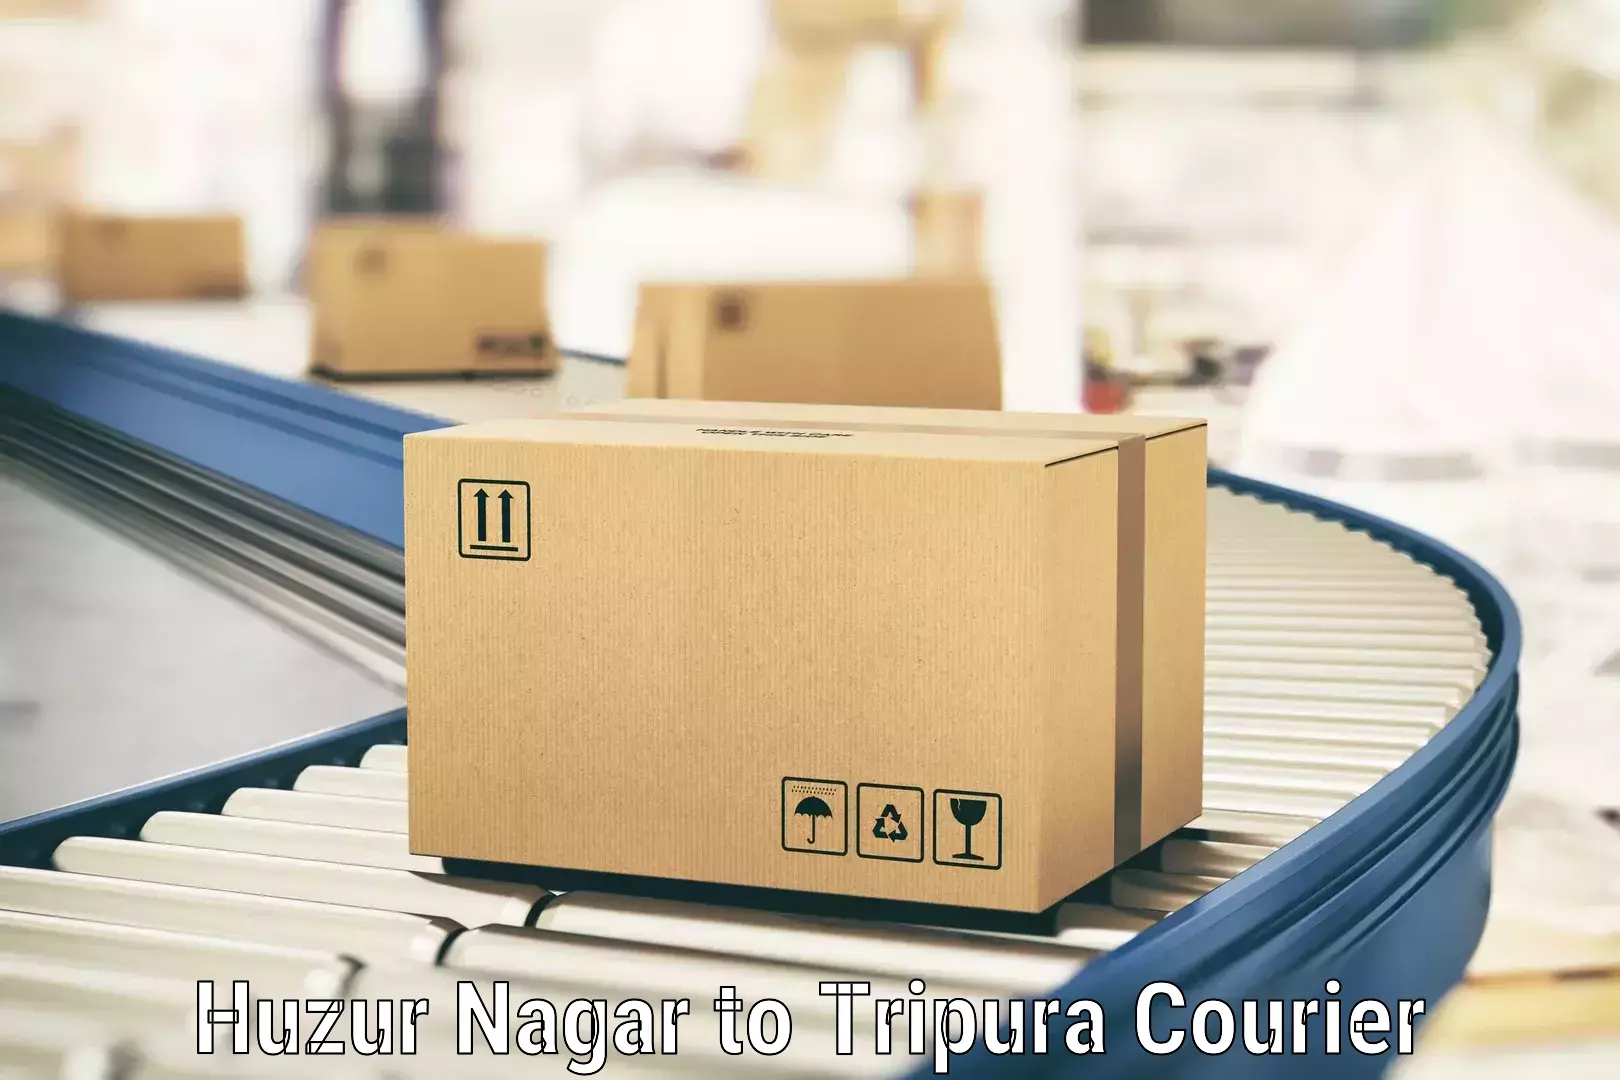 Customer-oriented courier services Huzur Nagar to Manu Bazar